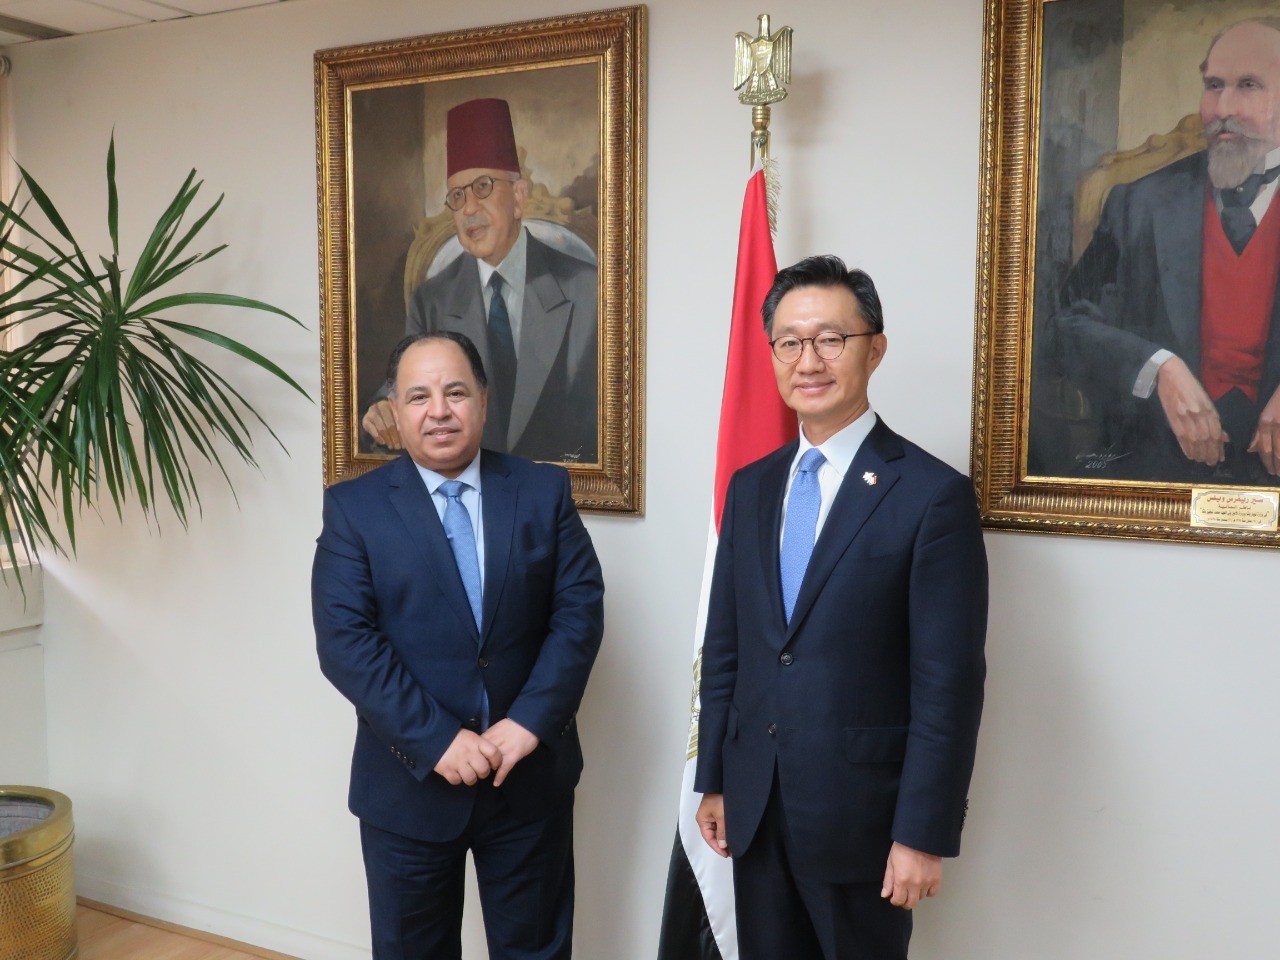 معيط خلال لقائه سفير كوريا الجنوبية: توجيهات رئاسية بتحفيز الاستثمارات في مصر خاصة الكورية